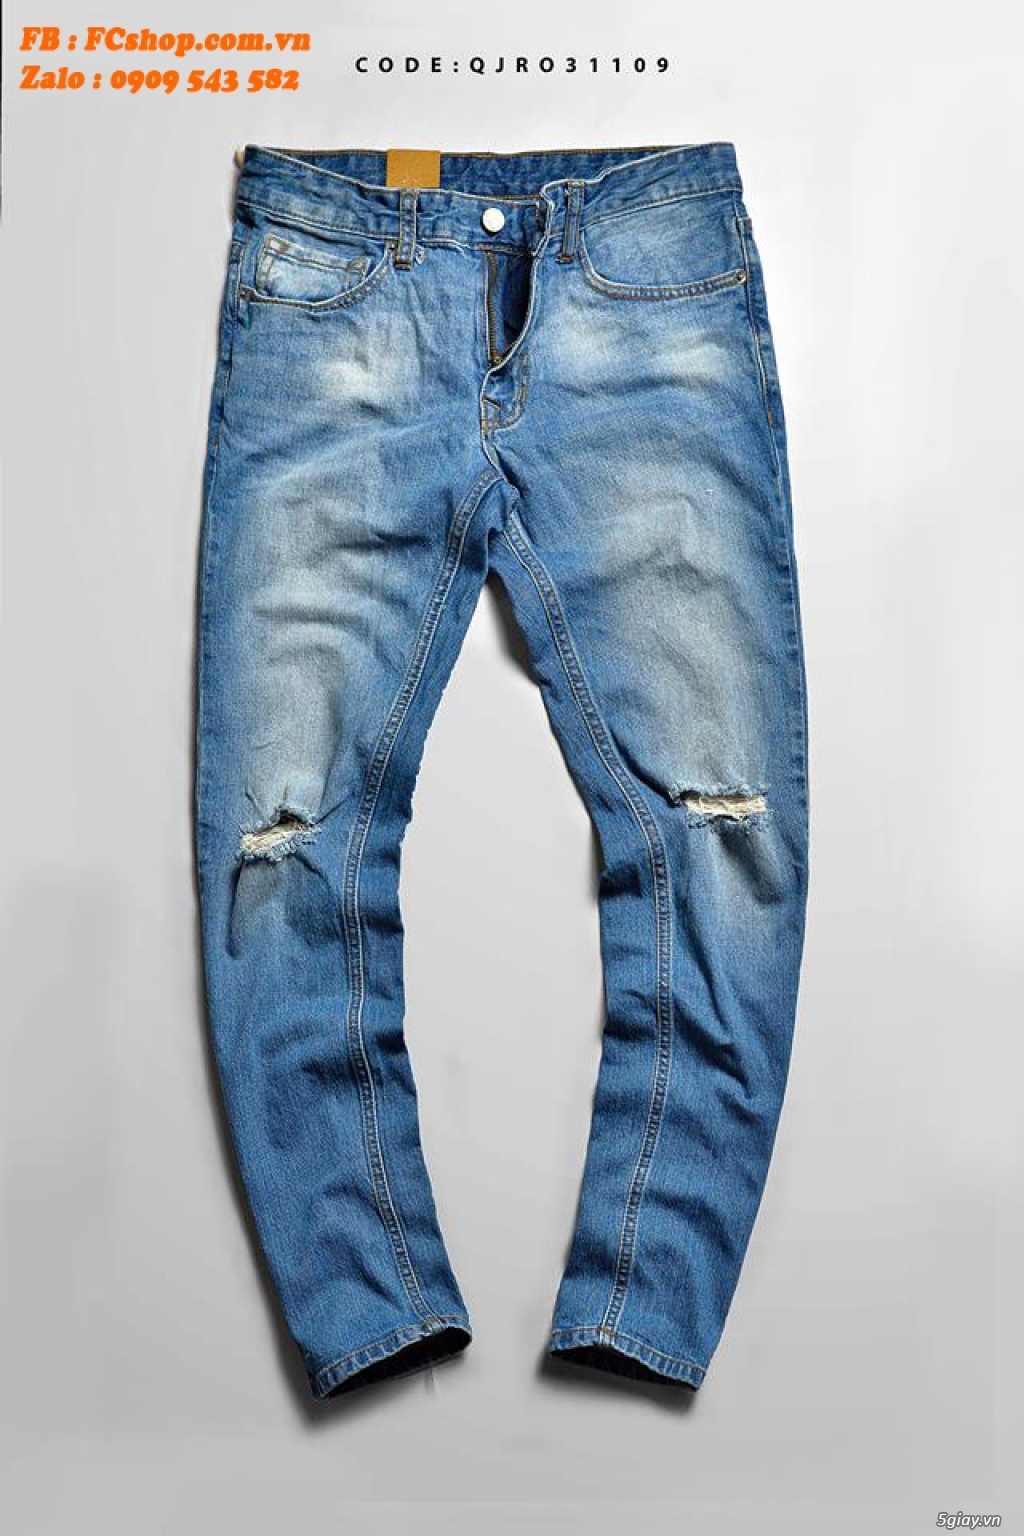 [TRÙM ĐỒ JEANS] - FCshop Chuyên quần jeans, sơmi jeans, khoác jeans .. - 33